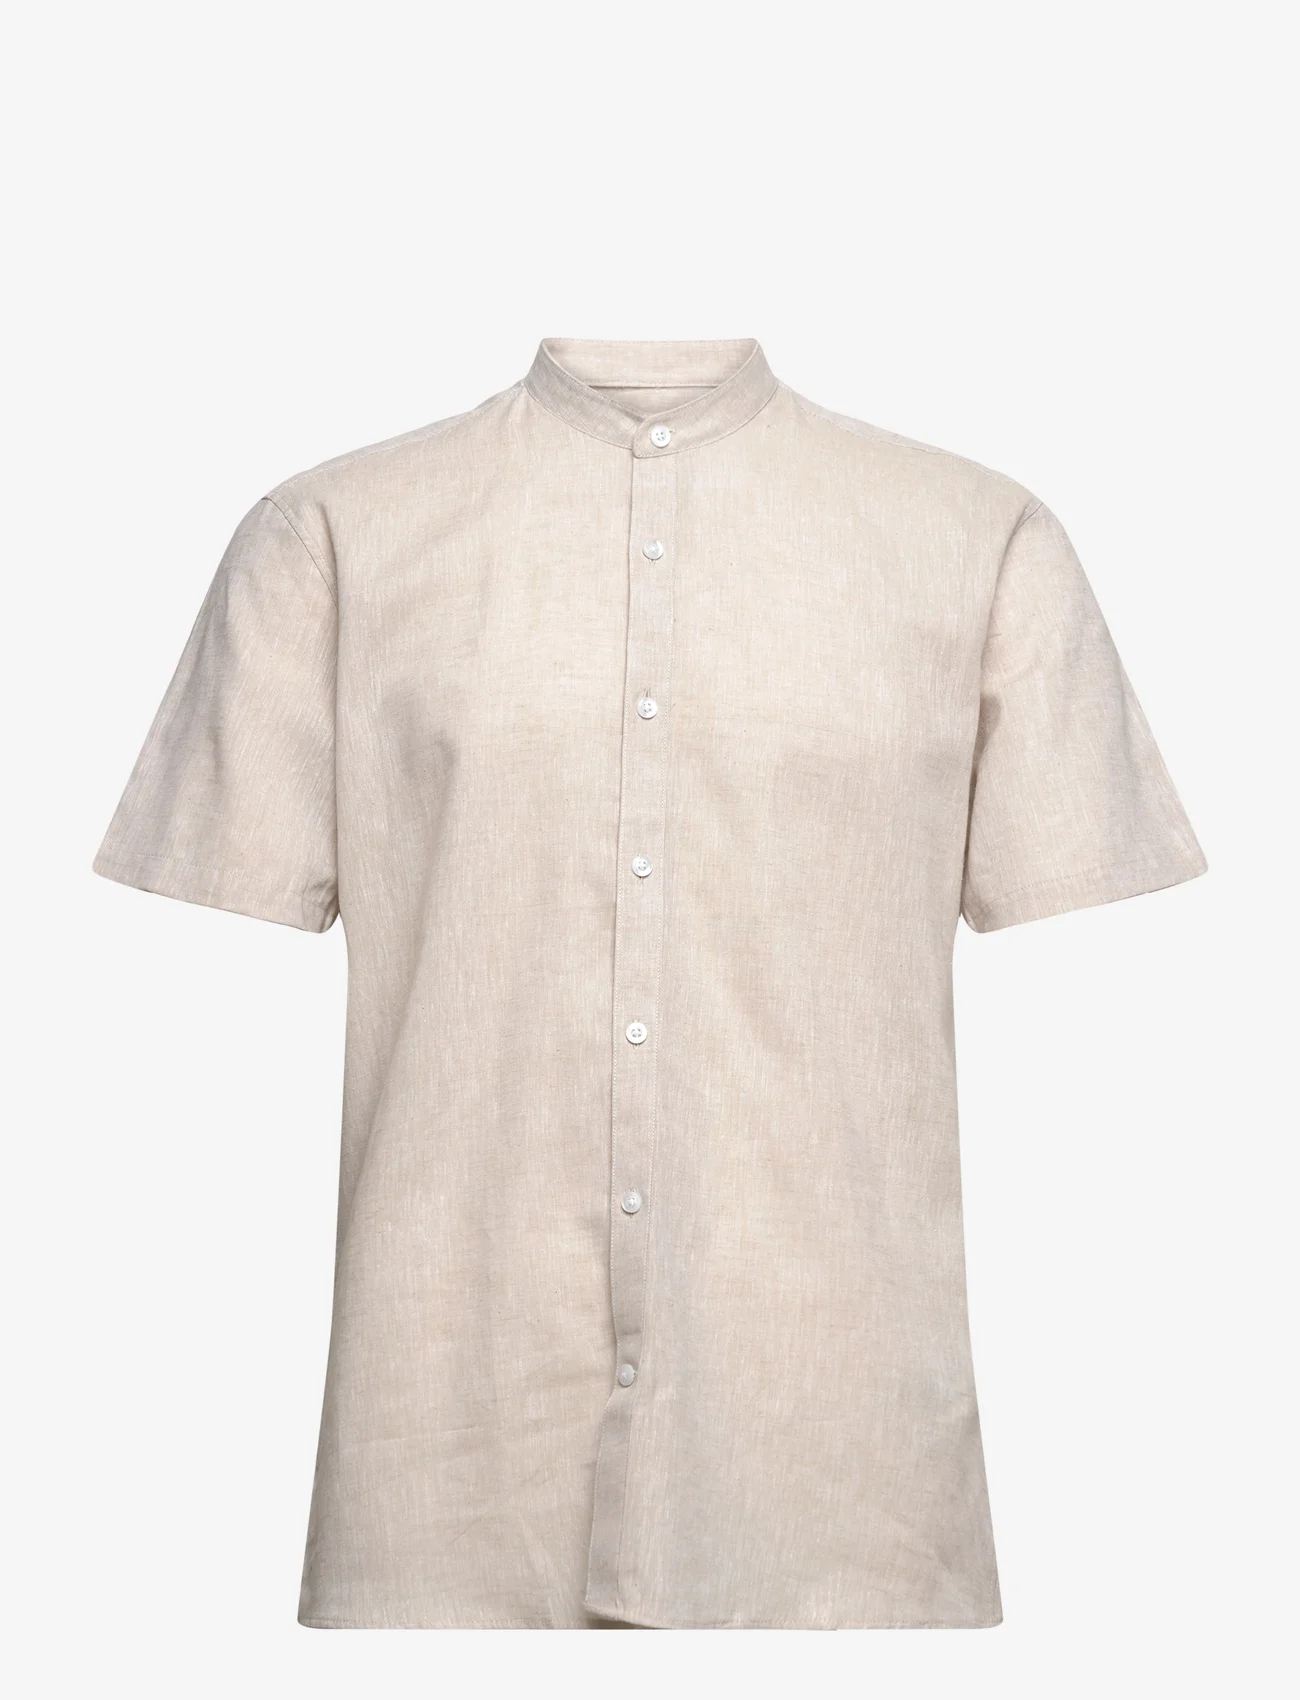 Lindbergh - Mandarin linen blend shirt S/S - linen shirts - stone - 0